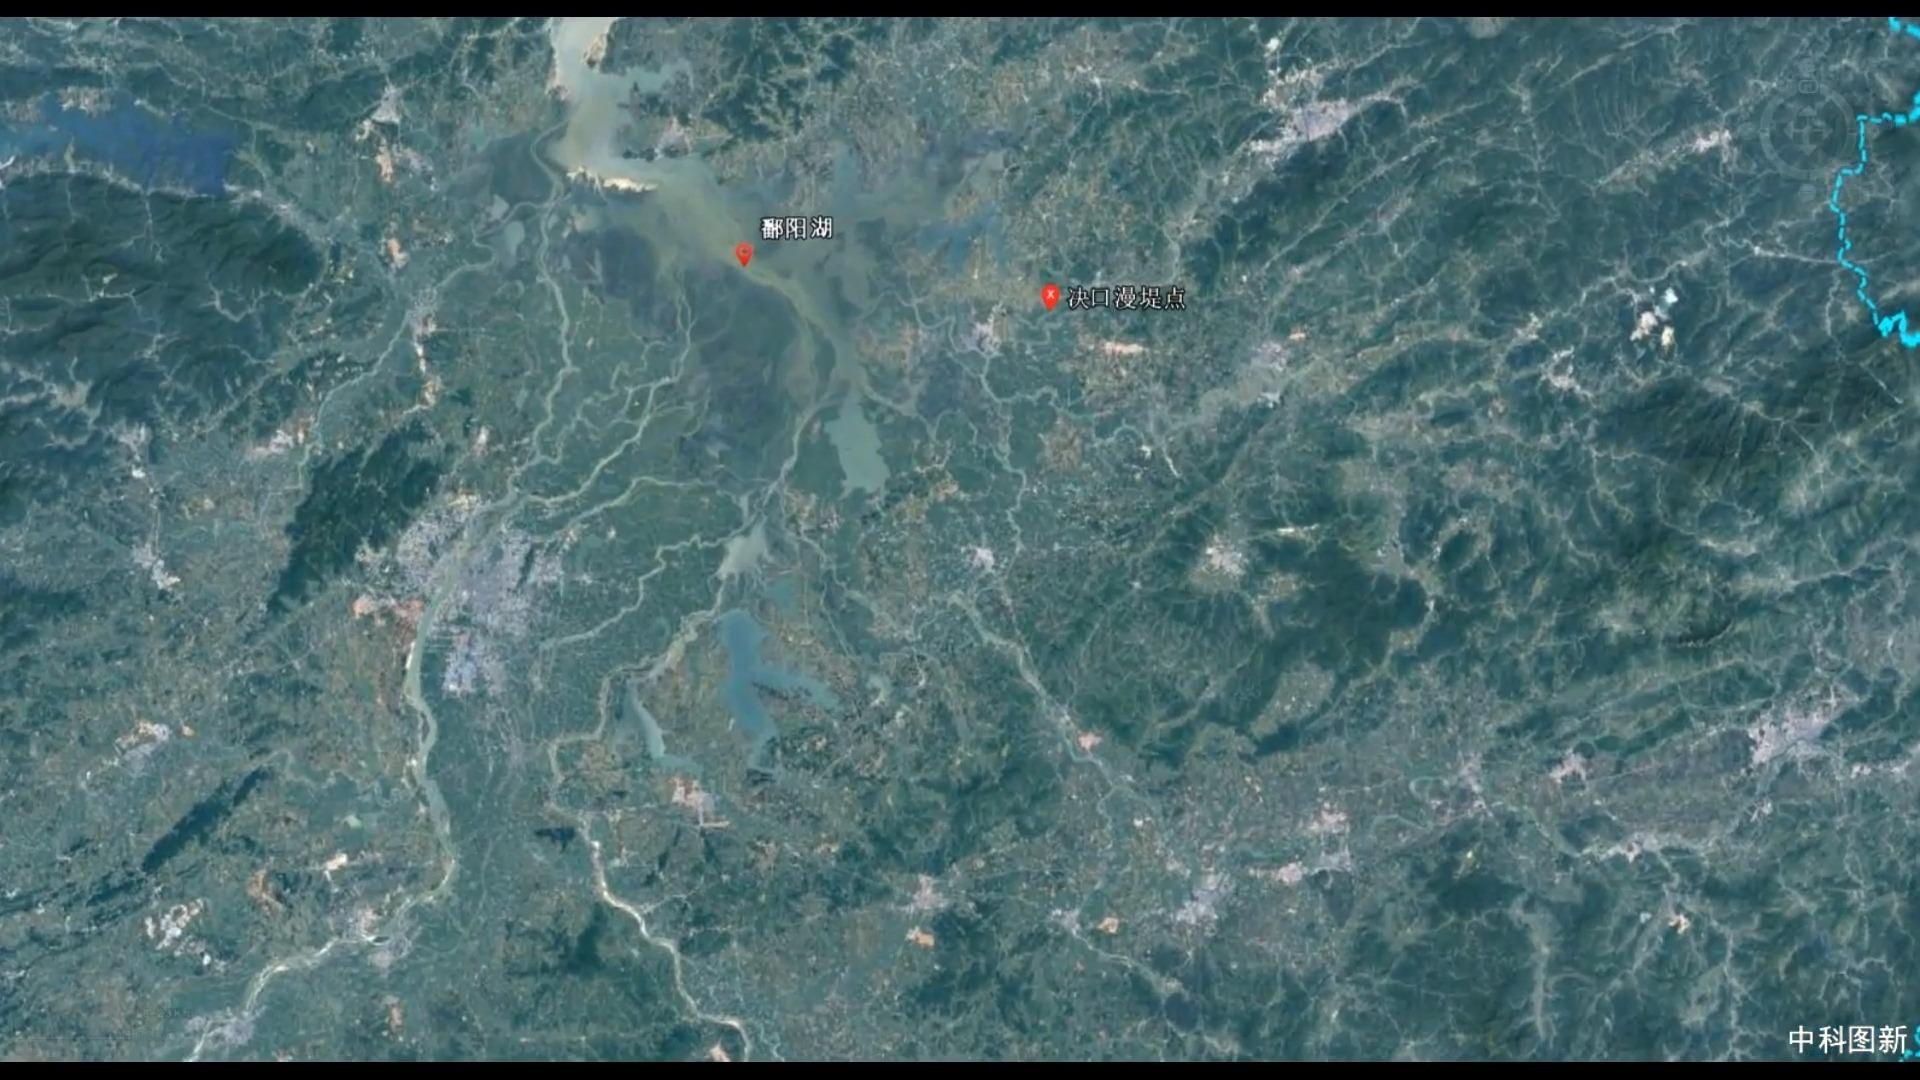 3d超高清全景卫星地图还原黎巴嫩首都贝鲁特港口爆炸现场